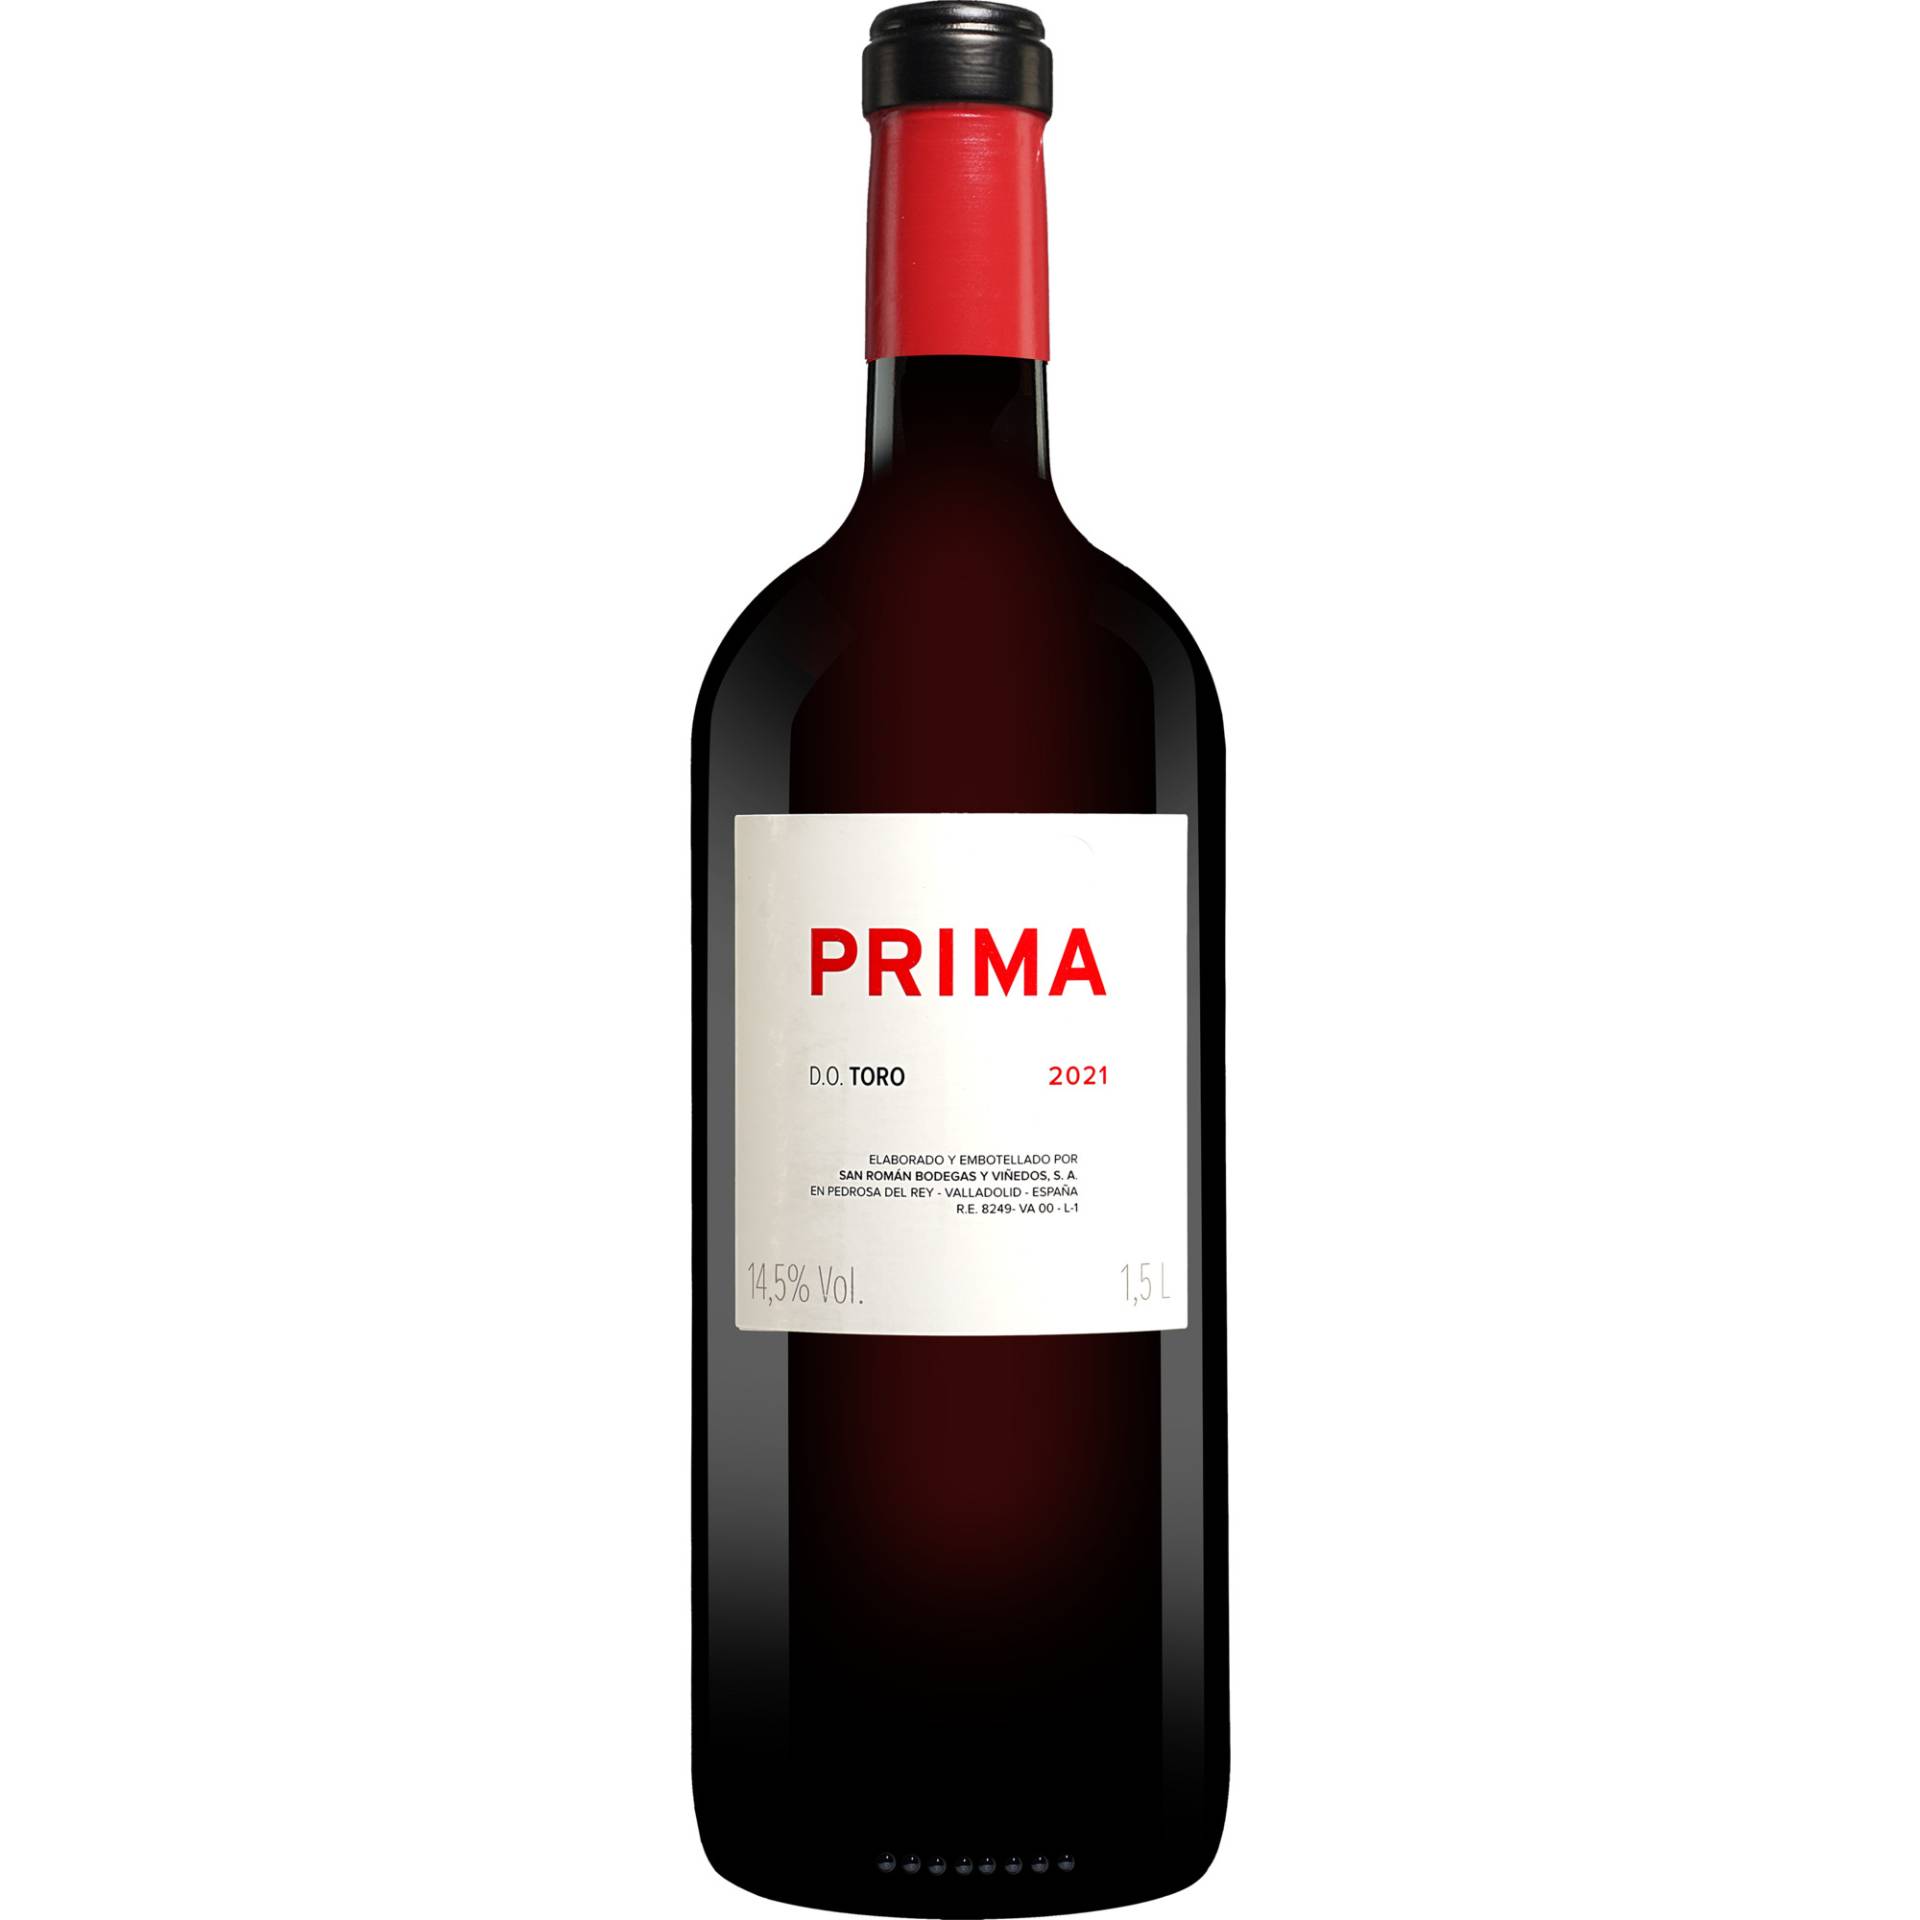 Prima - 1,5 L. Magnum 2021  1.5L 14.5% Vol. Rotwein Trocken aus Spanien von San Román Bodegas y Viñedos